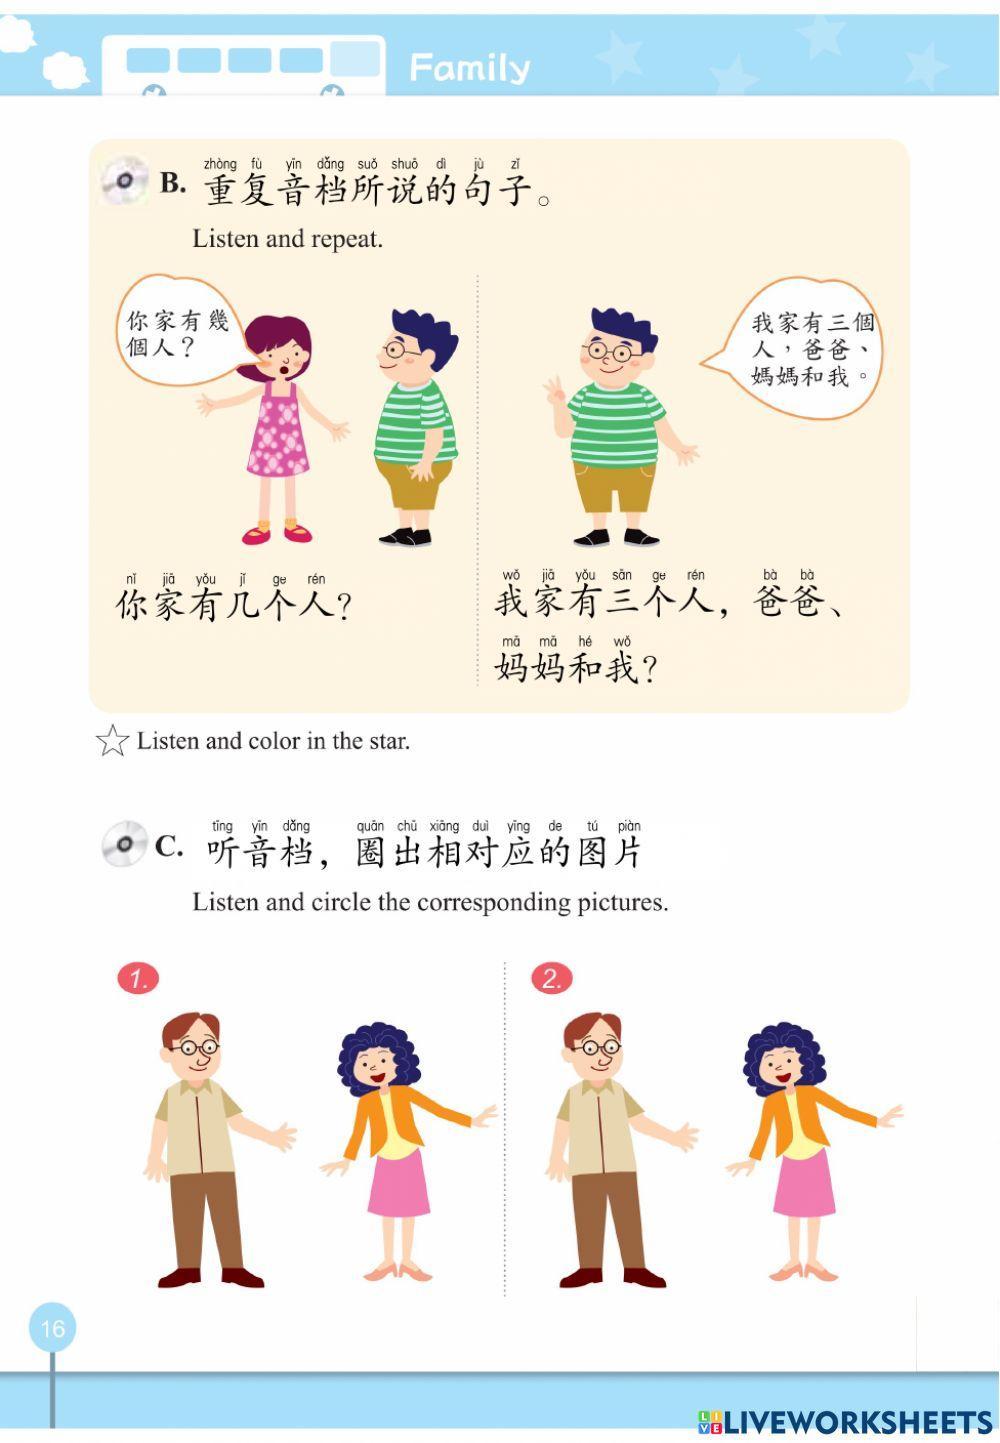 學華語向前走-基礎冊習作-Family